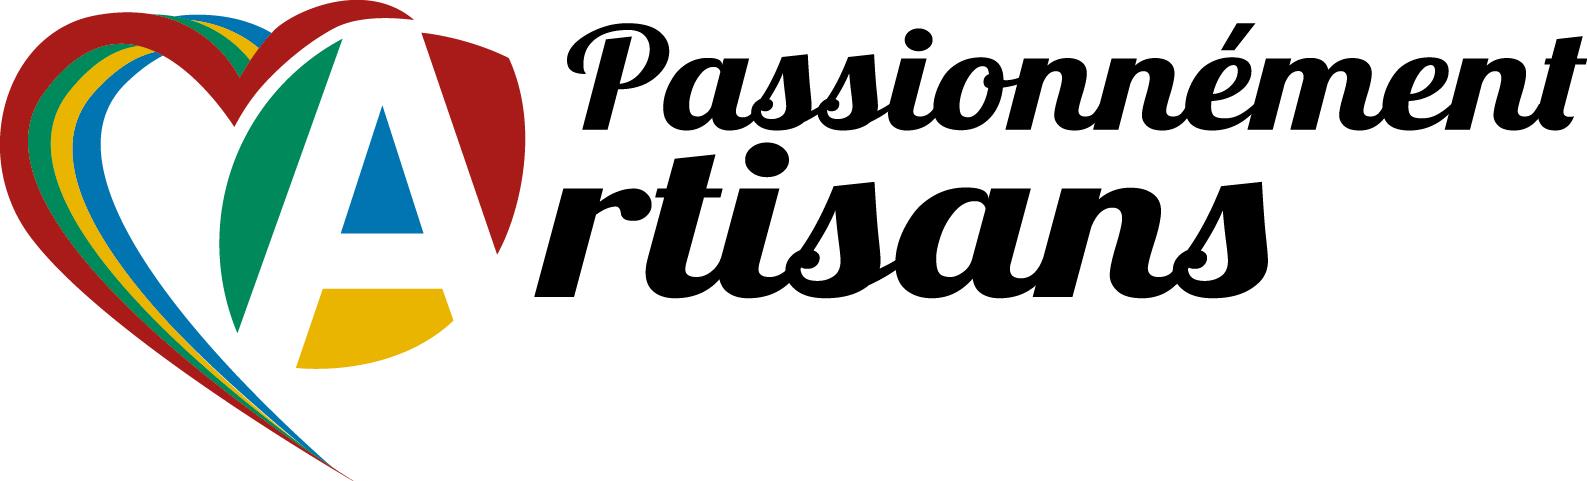 Passionnment Artisans Centre 